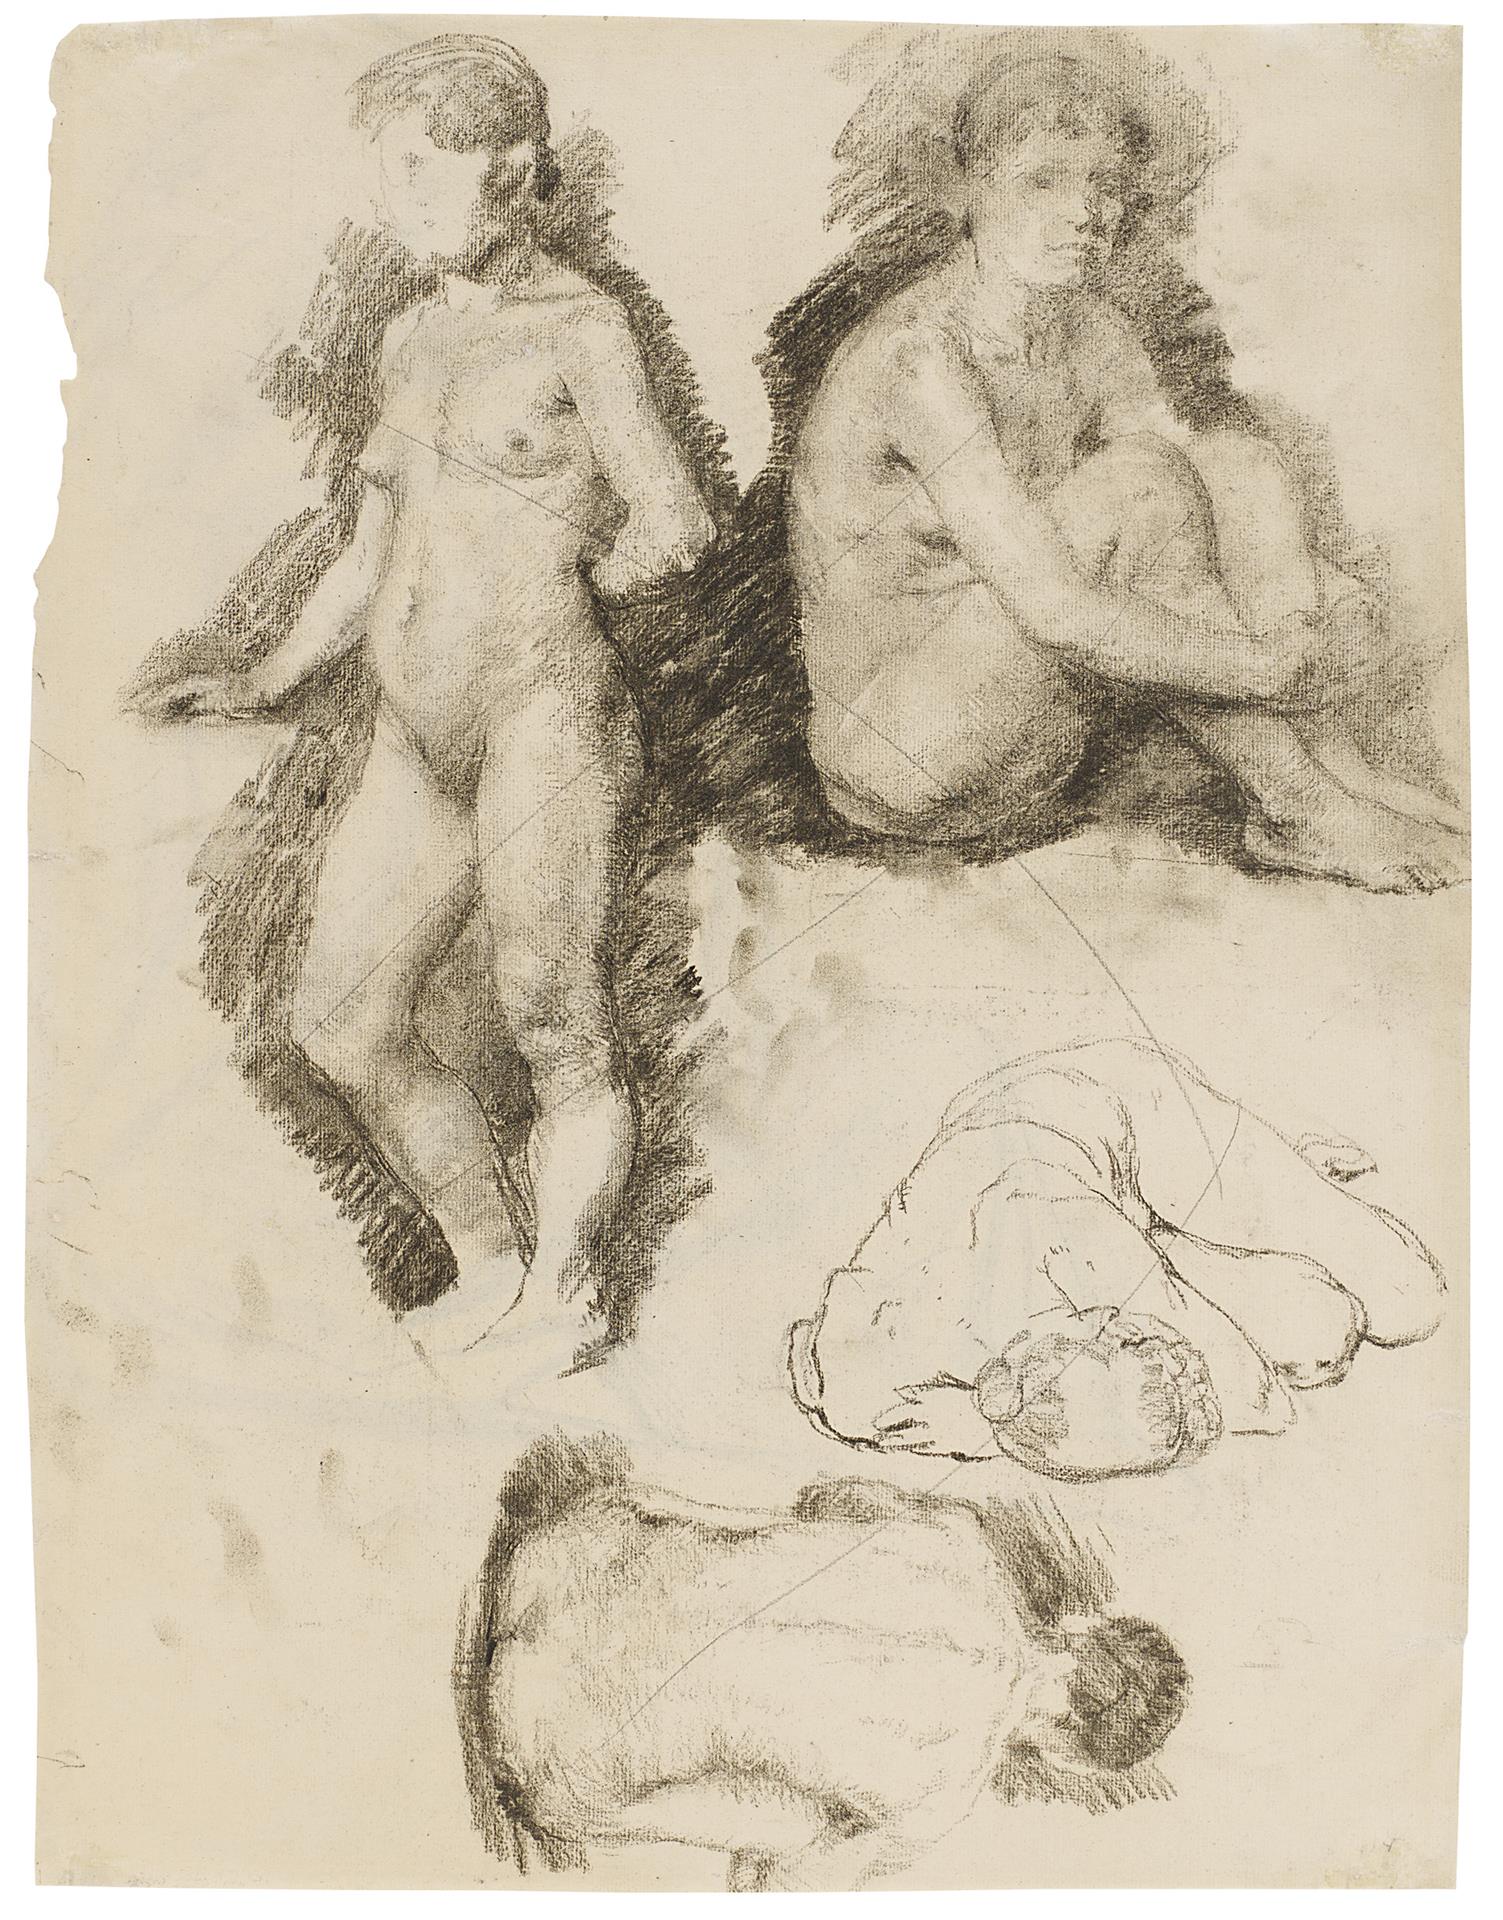 Käthe Kollwitz, Four Female Nudes, 1888/1889, charcoal, NT 23, Cologne Kollwitz Collection © Käthe Kollwitz Museum Köln